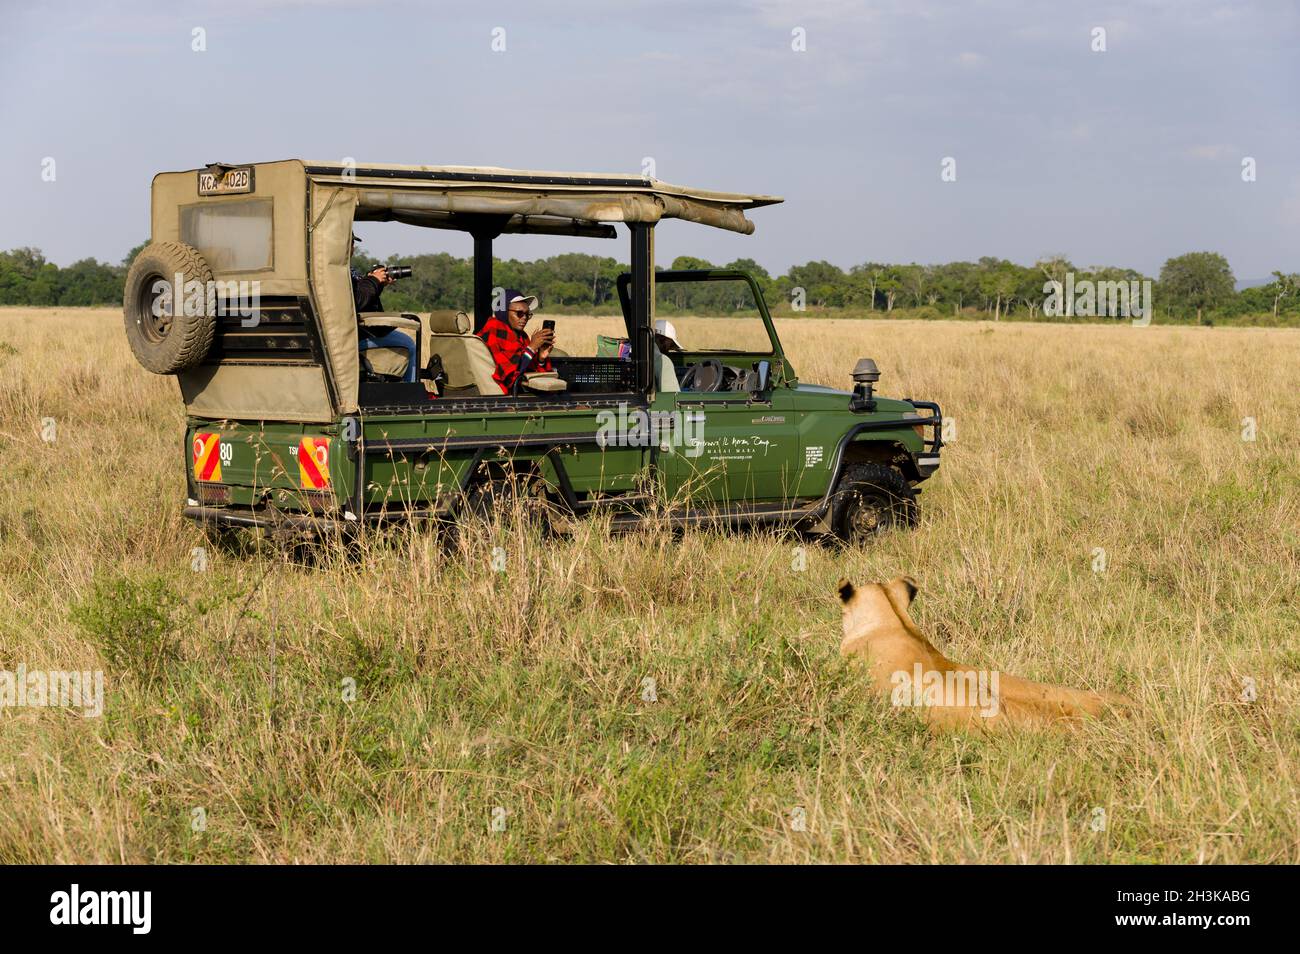 Les touristes se sont assis à regarder un lion dans un 4x4 Toyota Landcruiser, Masai Mara, Kenya Banque D'Images